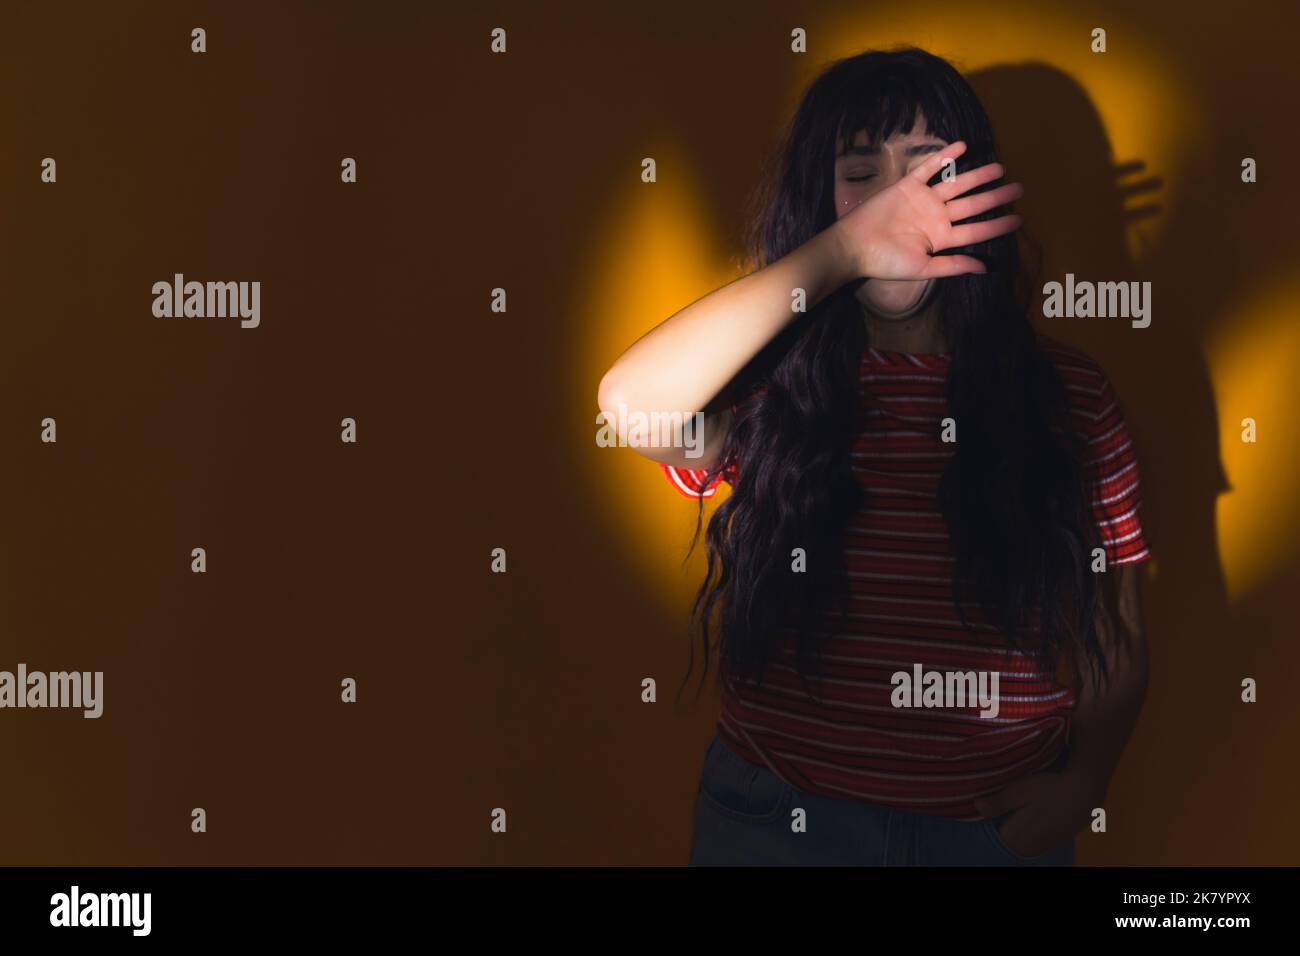 Una giovane, bella ragazza con lunghi capelli scuri appoggiati al muro al centro della luce circolare, nascondendo il viso con il braccio. Foto di alta qualità Foto Stock